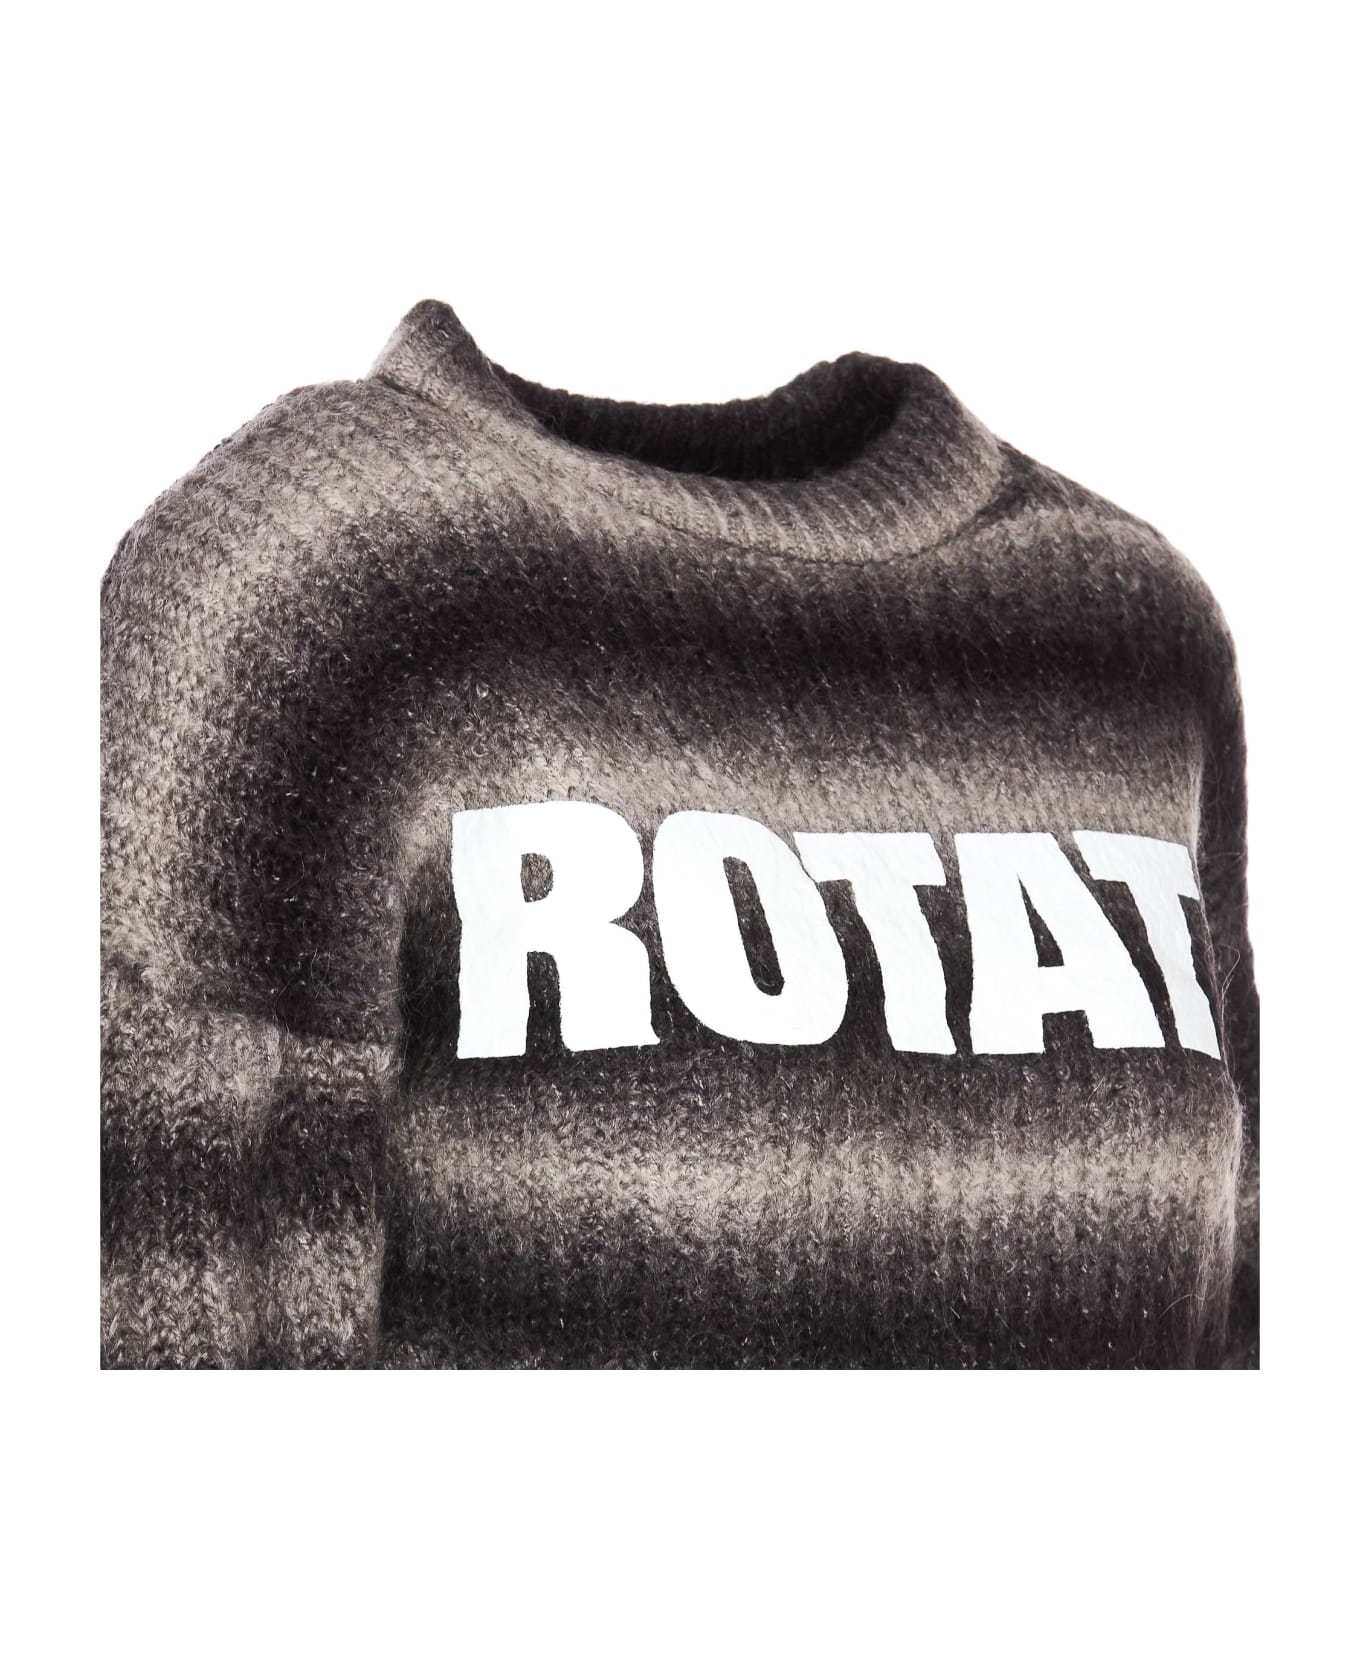 Rotate by Birger Christensen Logo Sweater - GREY/BLACK